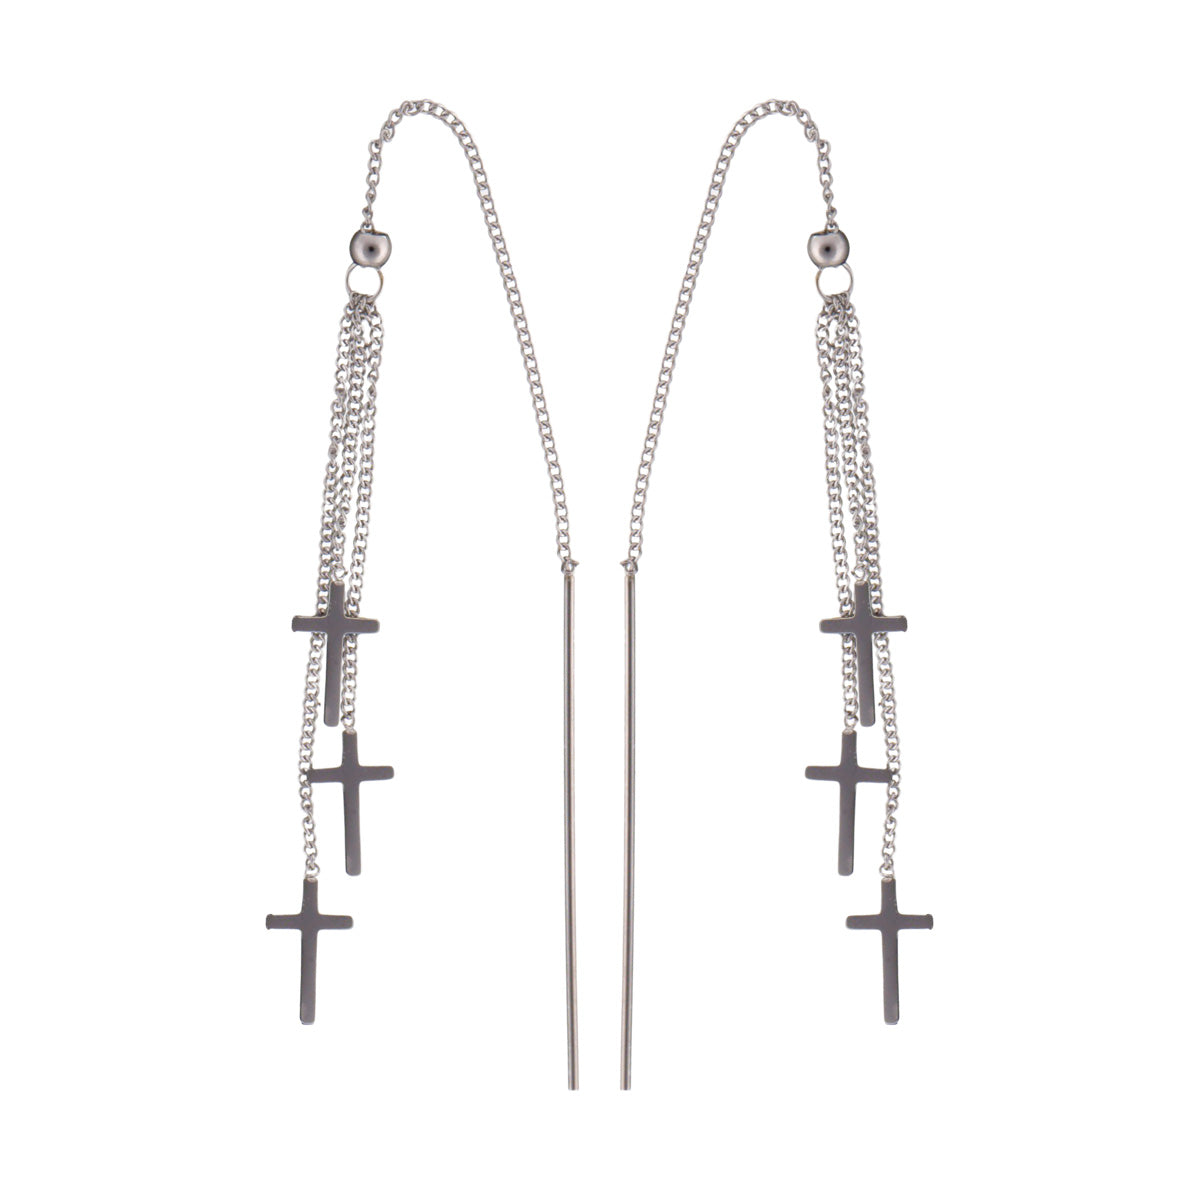 Chain cross earrings